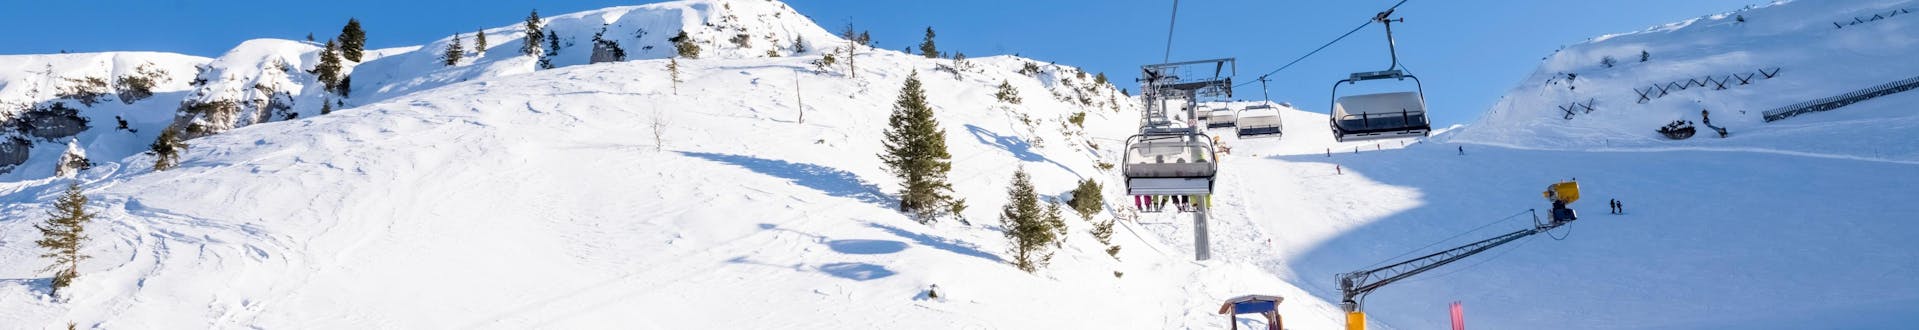 Día soleado en las pistas con gente esquiando y subiendo las colinas con el remonte.